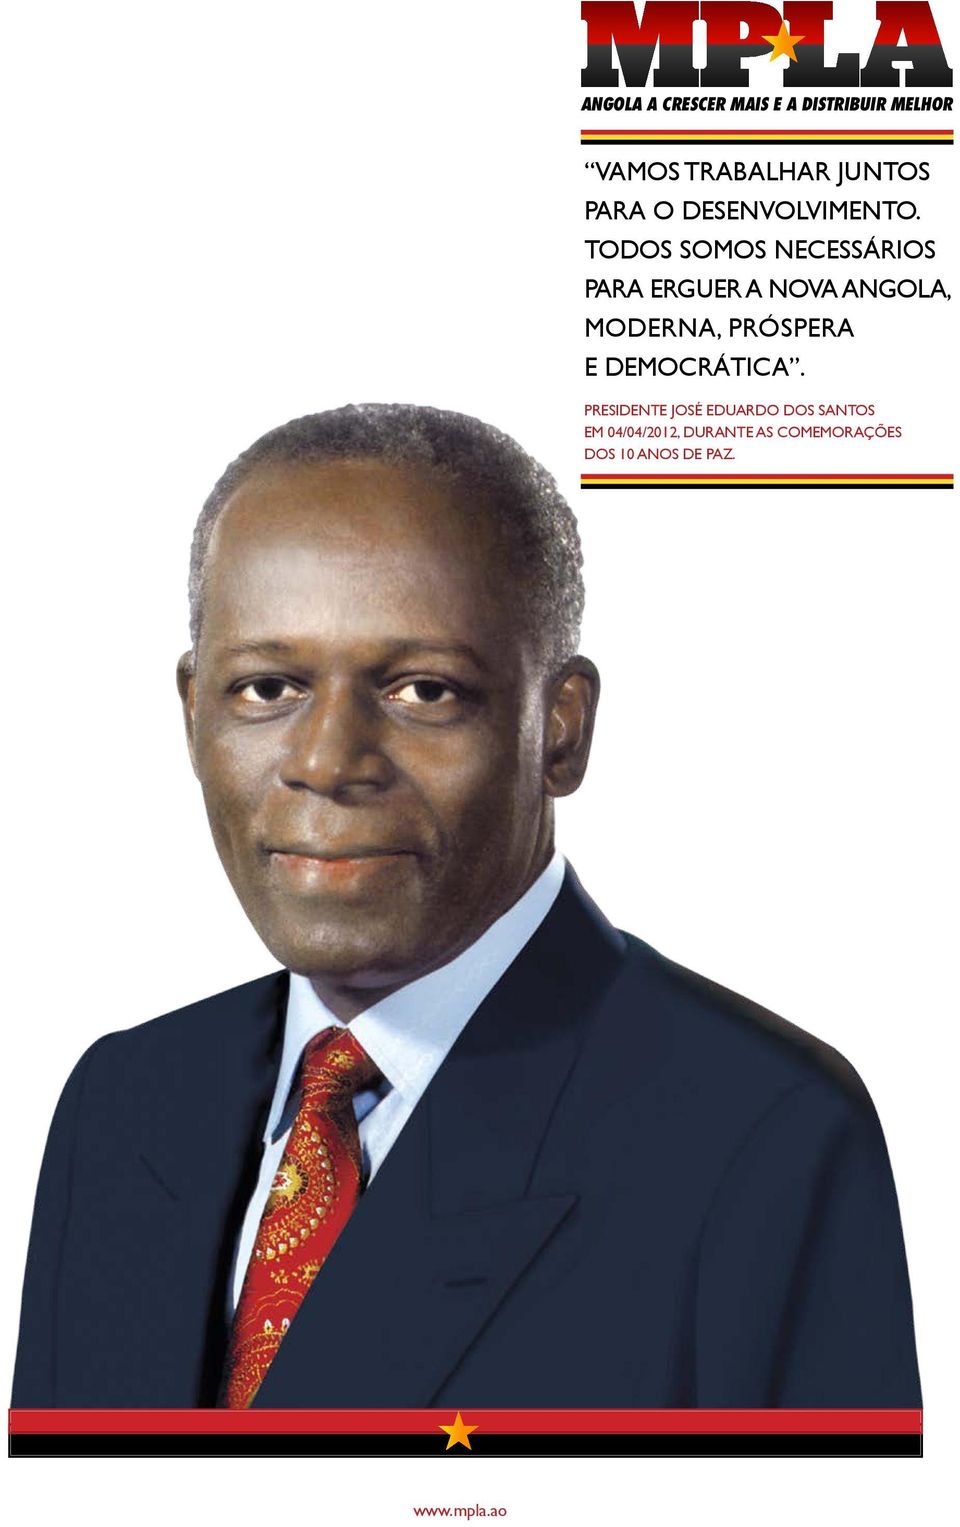 Todos somos necessários para erguer a nova Angola, moderna, próspera e democrática.